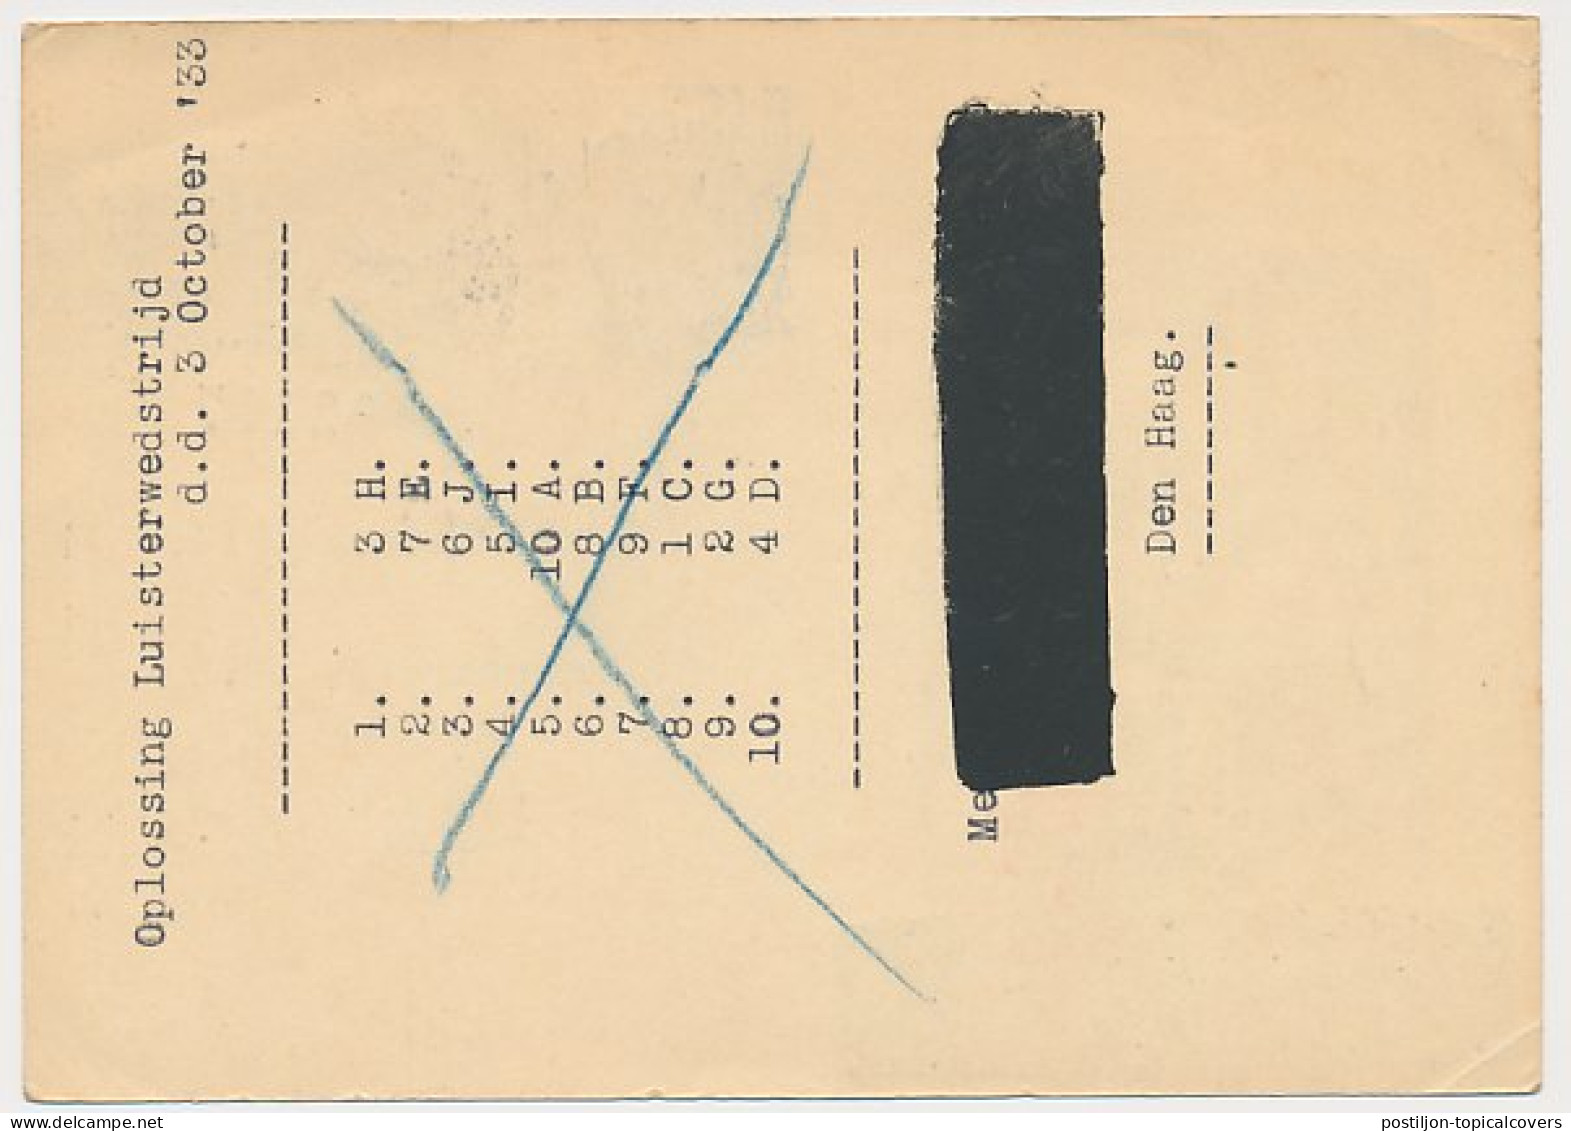 Briefkaart G. 233 / Bijfr. T.b.v. Radioprijsvraag - Den Haag  - Entiers Postaux